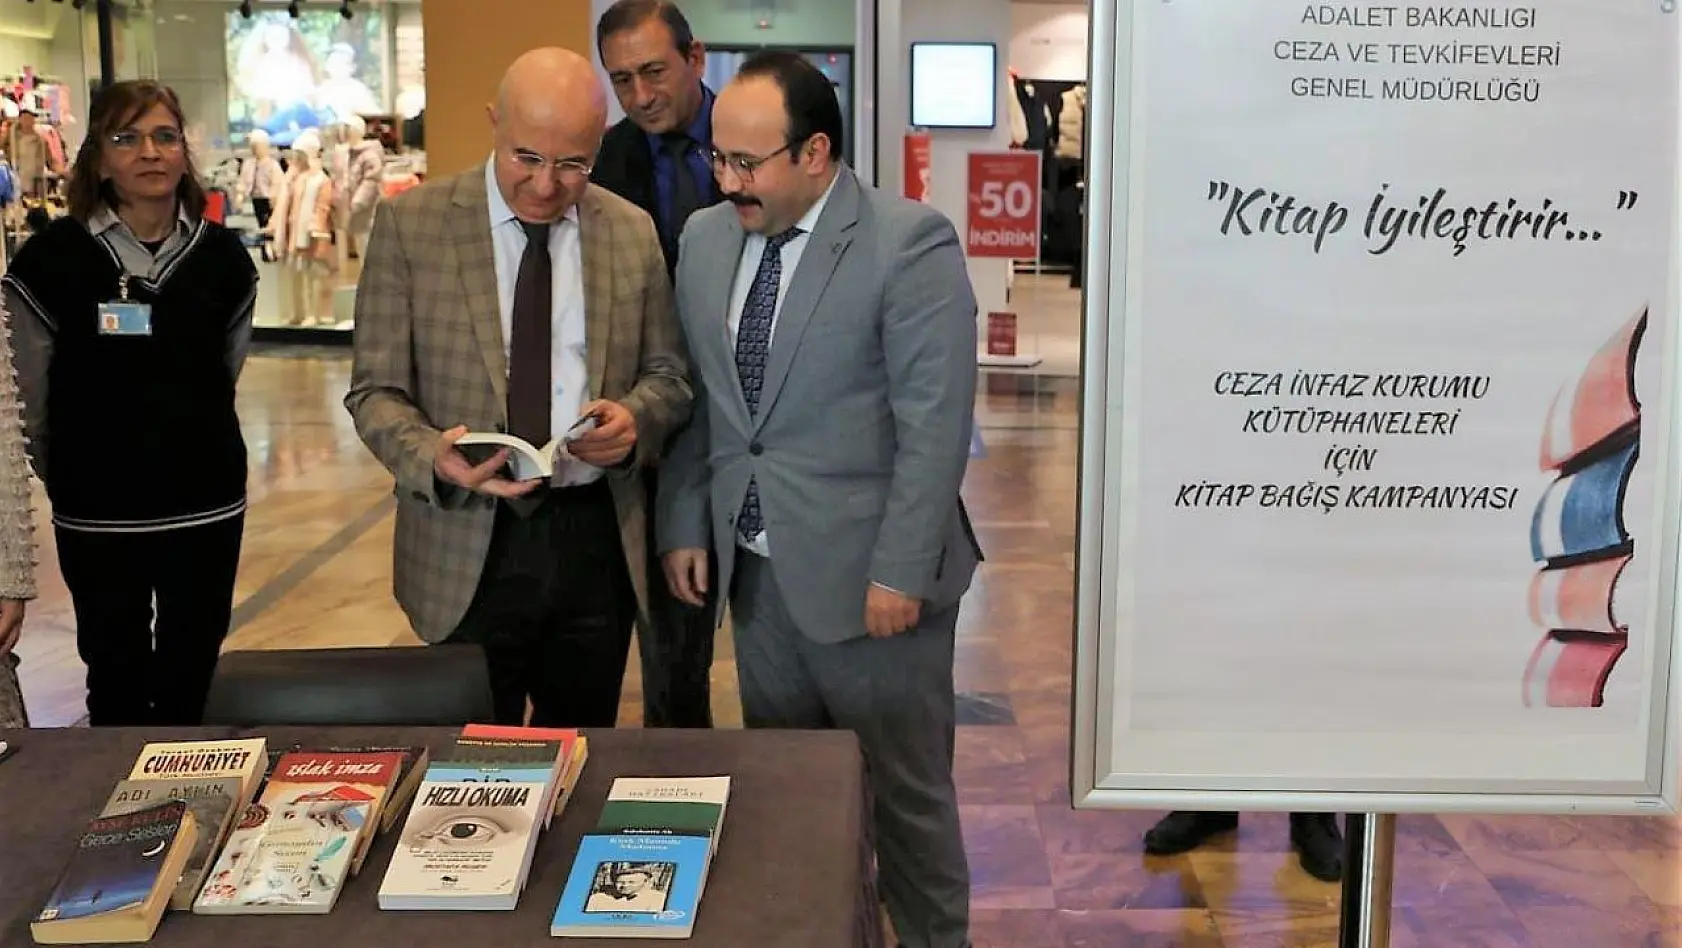 Denizli'de ceza infaz kurumu kütüphaneleri için kitap bağışı kampanyası başlatıldı